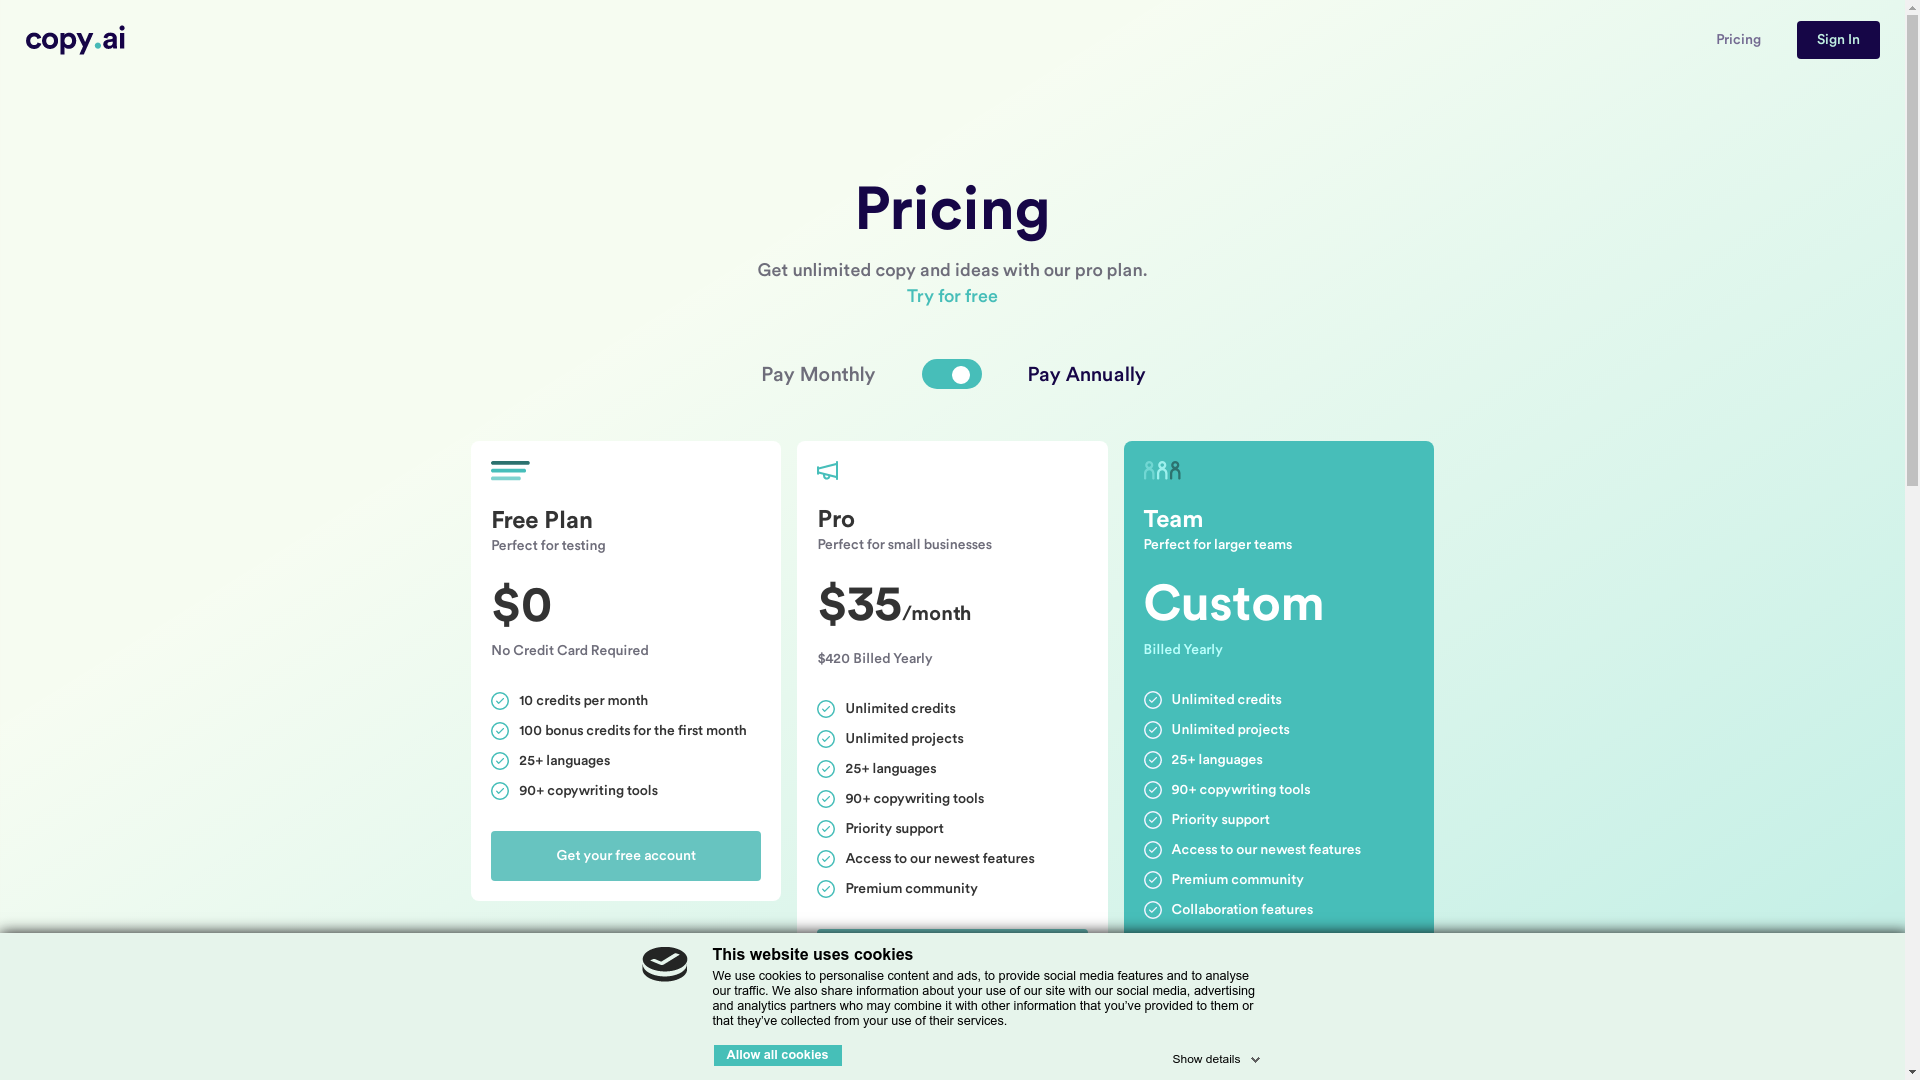 Copy.ai Pricing Plans Images